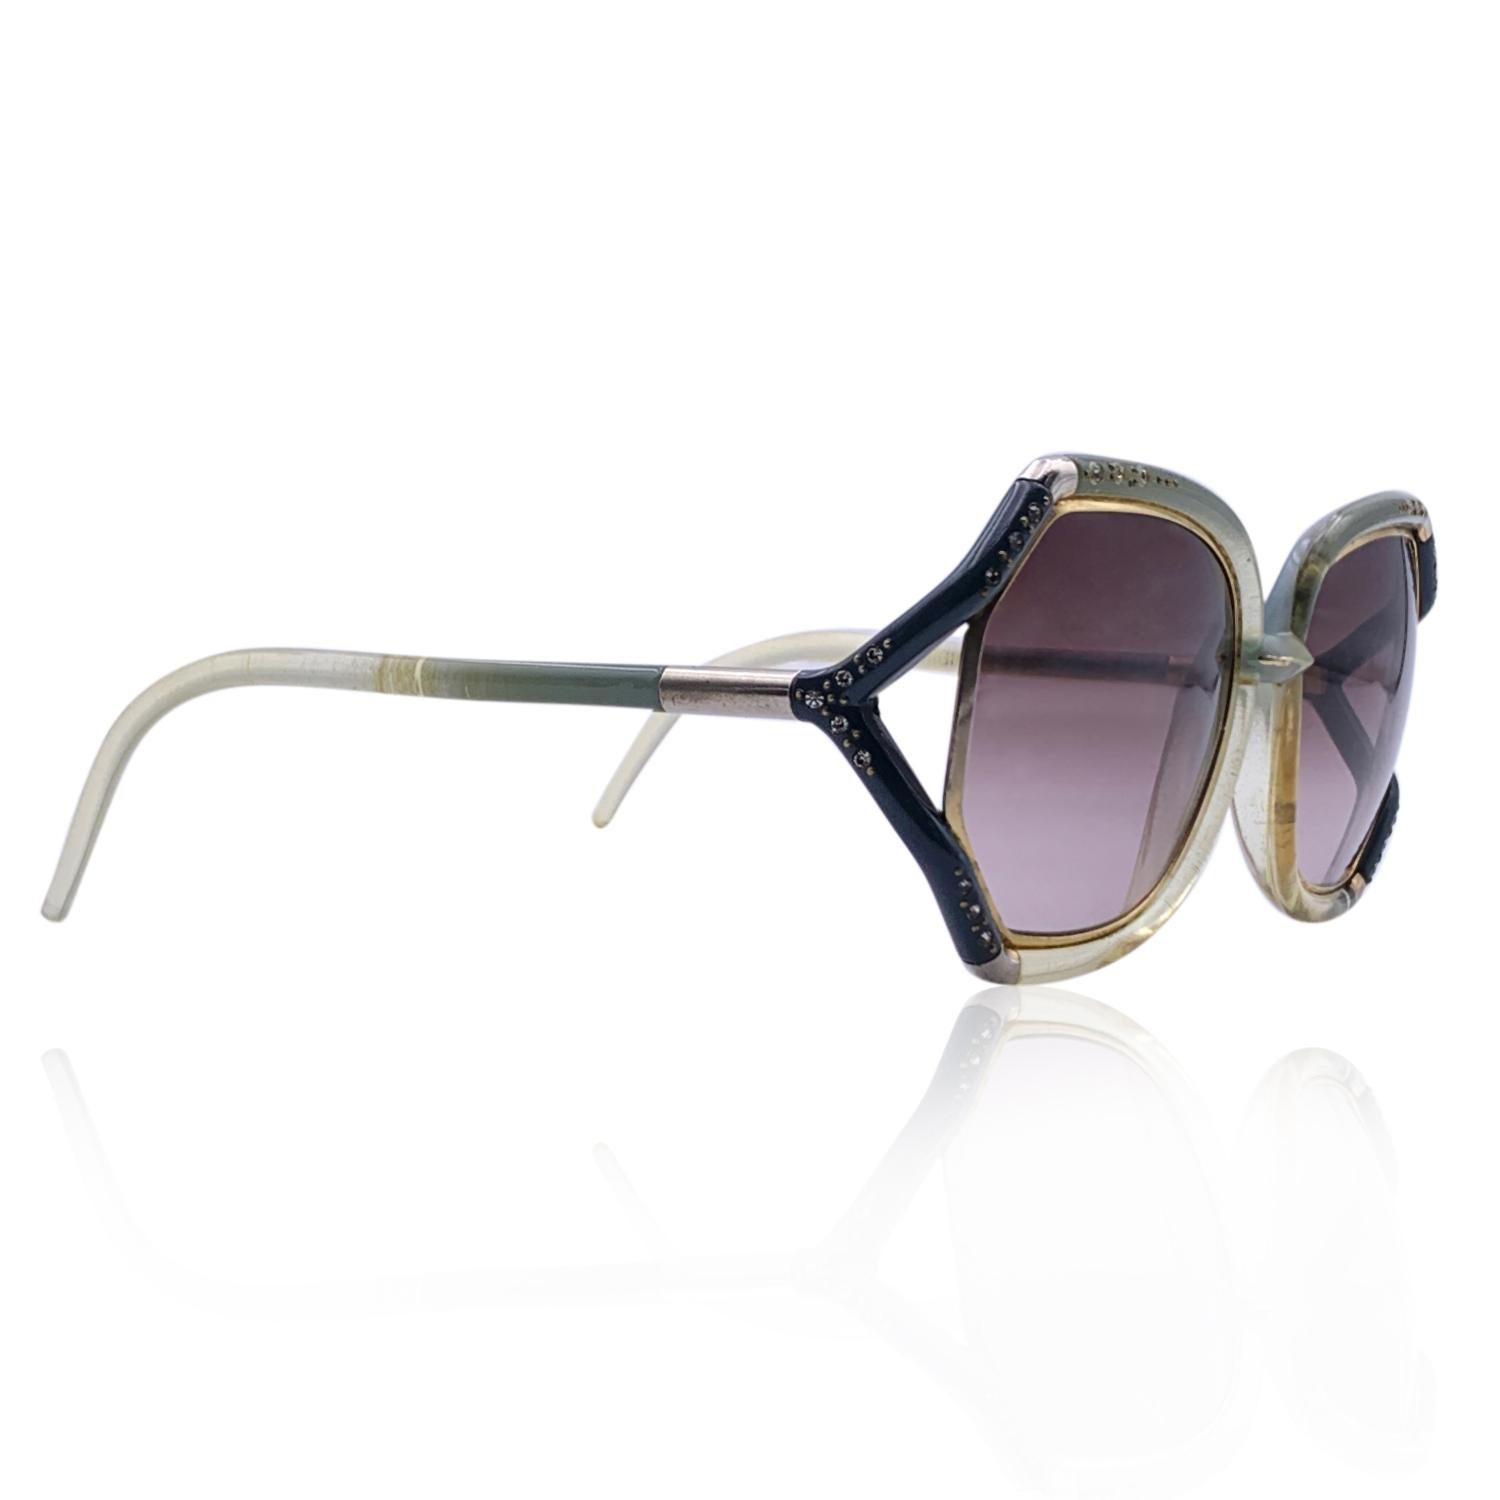 Rare lunettes de soleil vintage TED LAPIDUS oversized mod. TL10 Fabriquées en France. Cadre bicolore découpé, vert clair et gris, avec finition en métal doré. Embellissement en cristaux sur le devant. Verres gradients marron. protection UV à 100%.